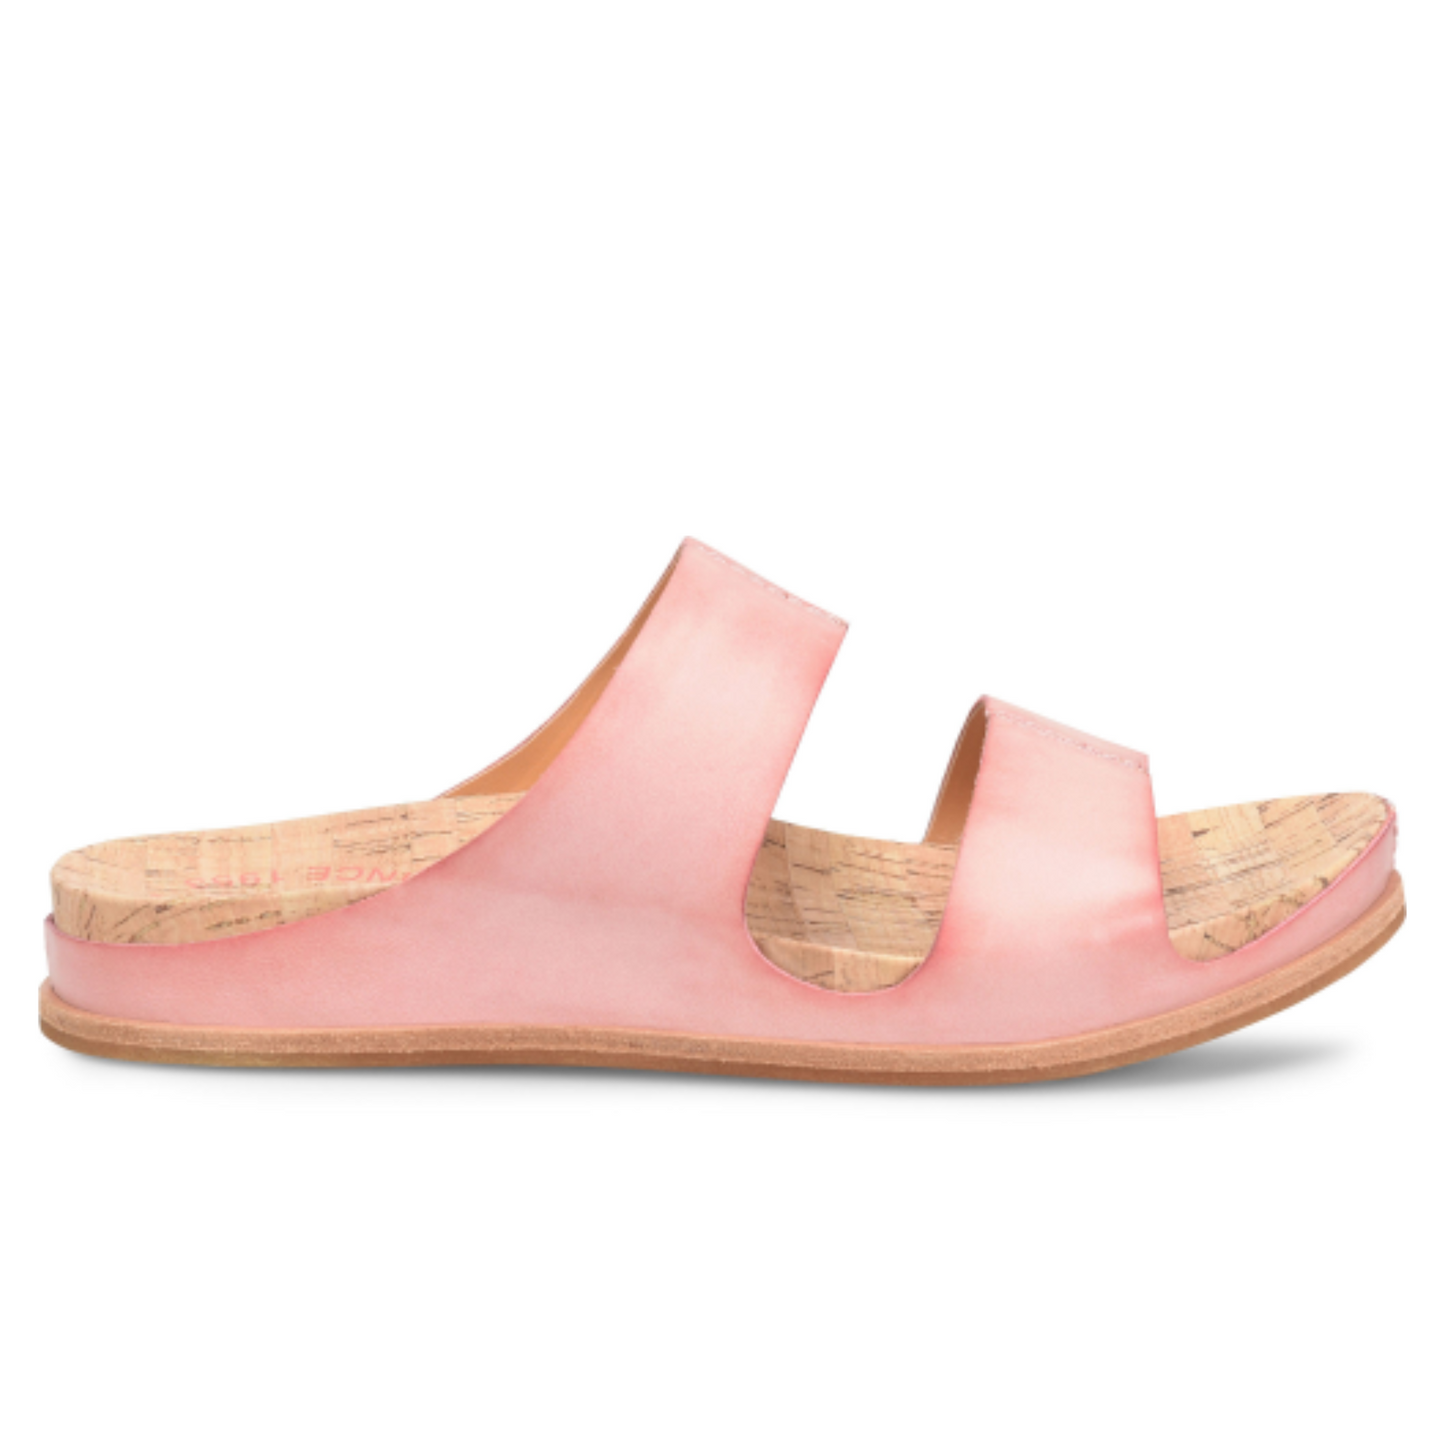 The Pink dual band Tutsi slide sandal from Kork-Ease